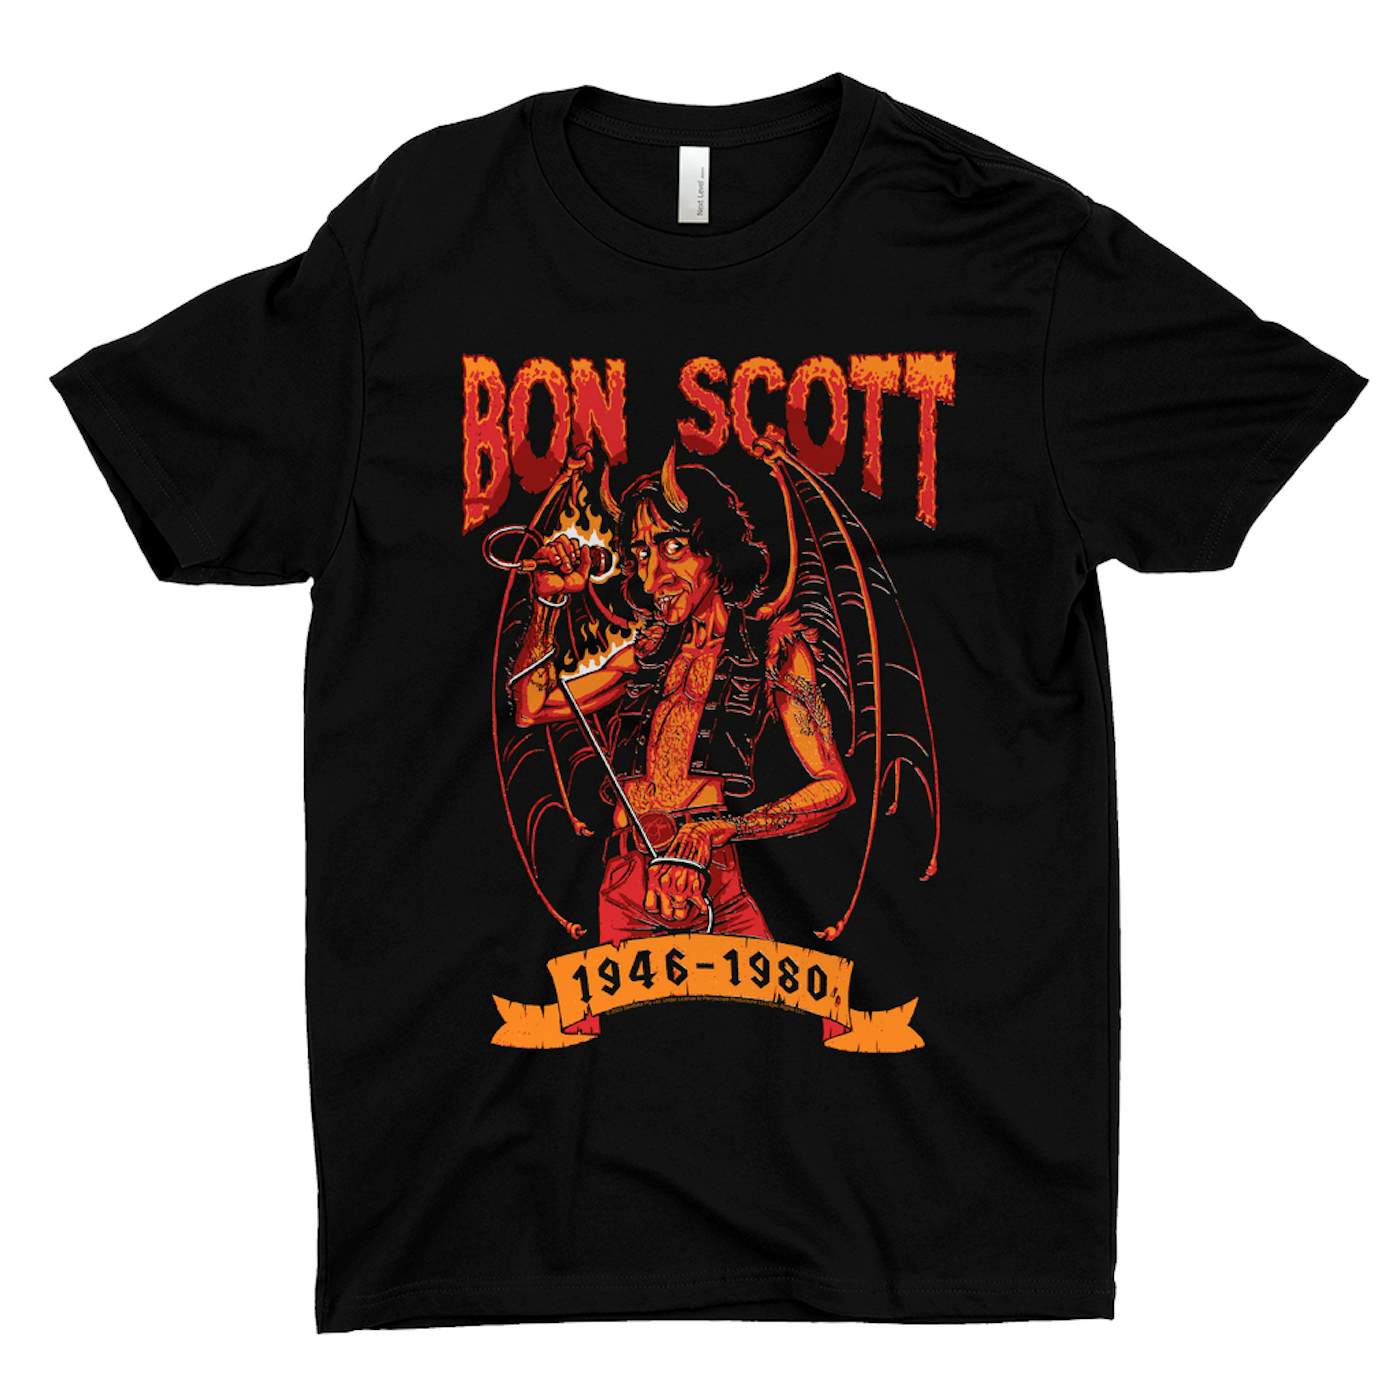 Bon Scott T-Shirt | Devilish Rocker 1946-1980 Bon Scott Shirt